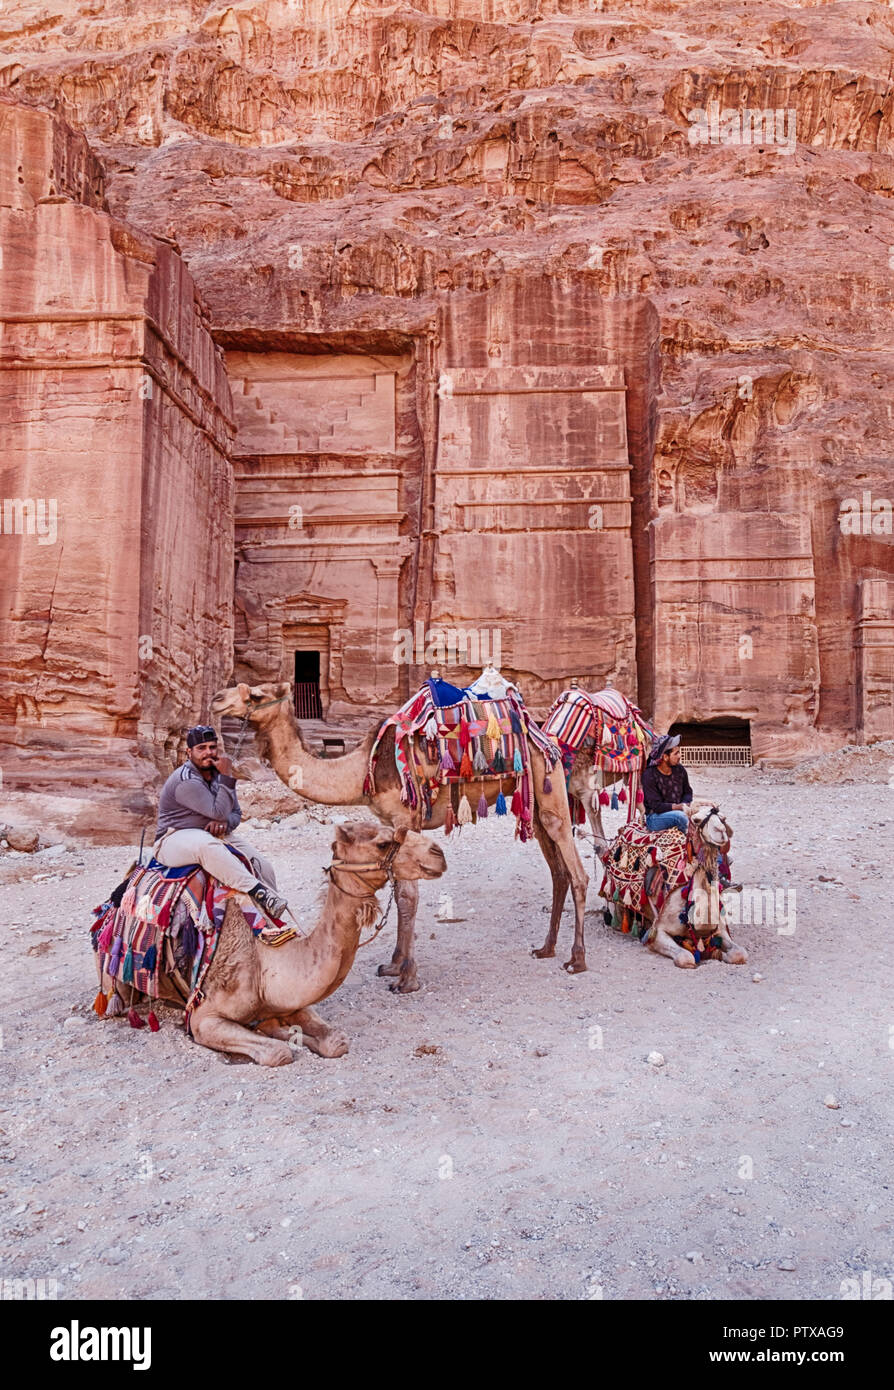 PETRA, JORDANIE - 15 juin 2018 : Quatre chameaux et leurs chauffeurs attendent pour des tours en face d'une des anciennes tombes de Petra qui sont taillées dans le roc Banque D'Images